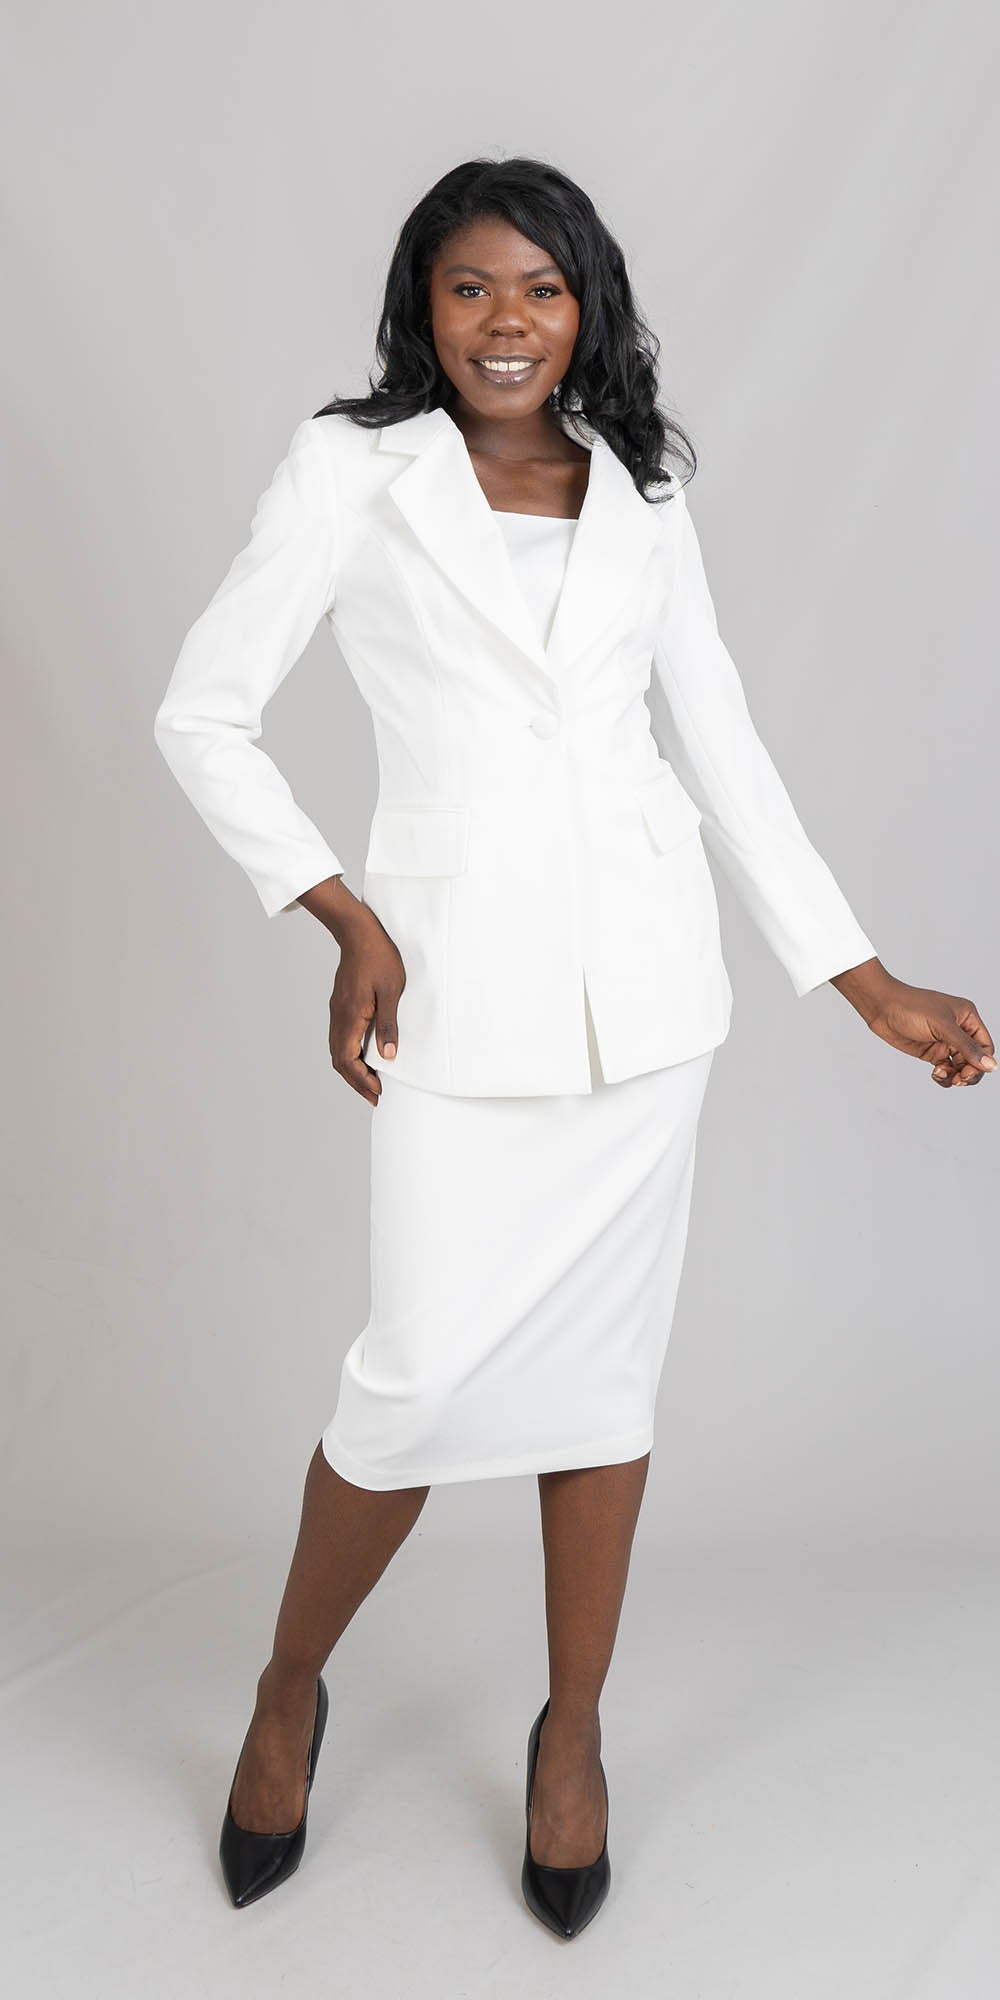 Aussie Austine - 12441 - White - 2pc Skirt Suit